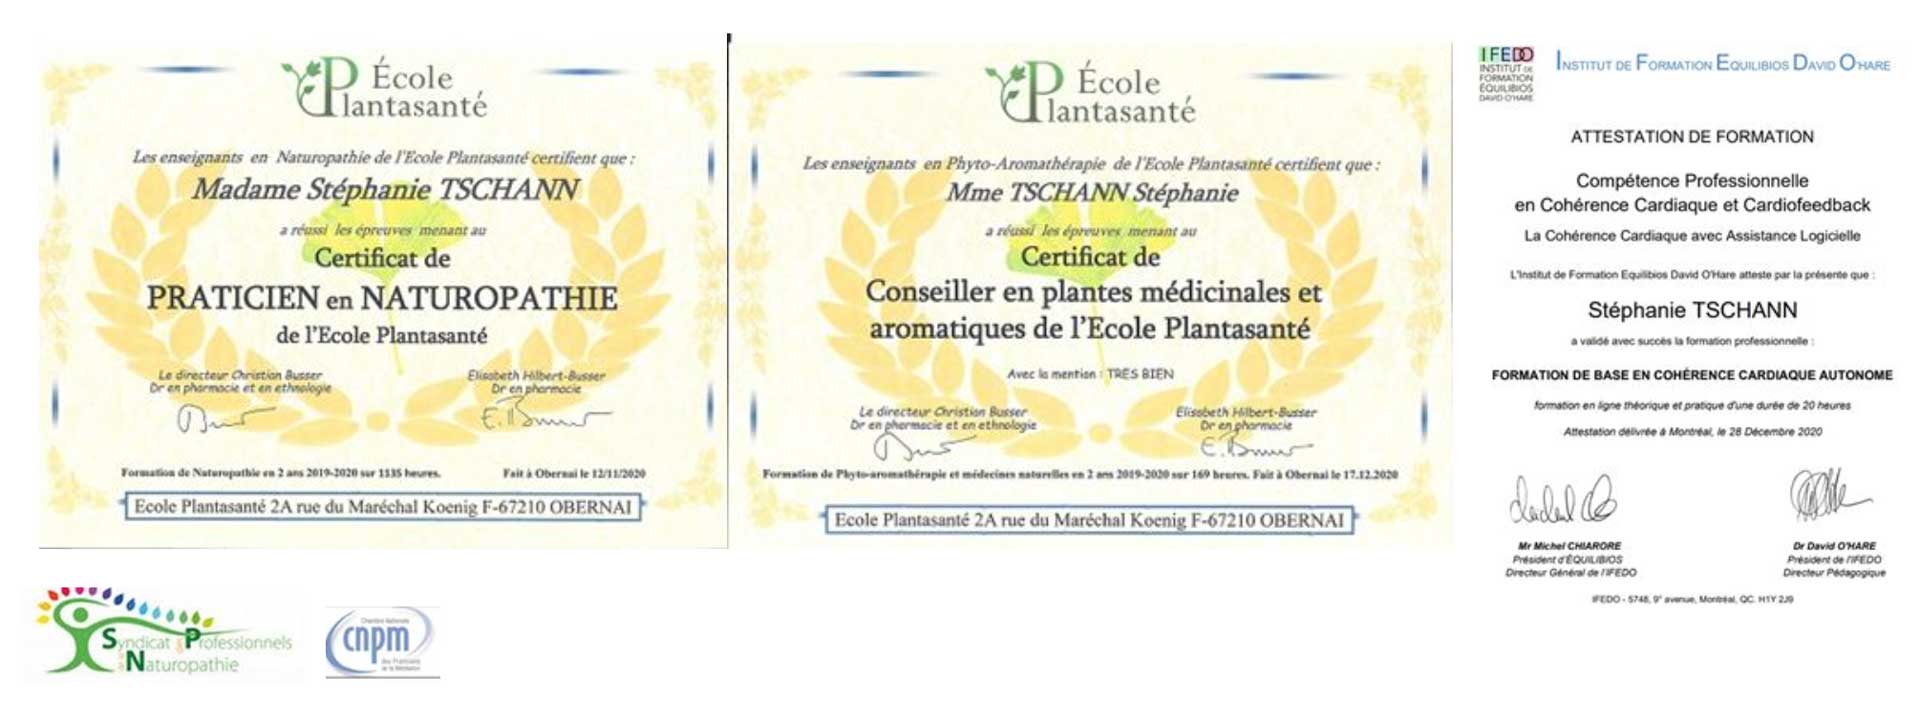 certifications-Stephanie-Tschann